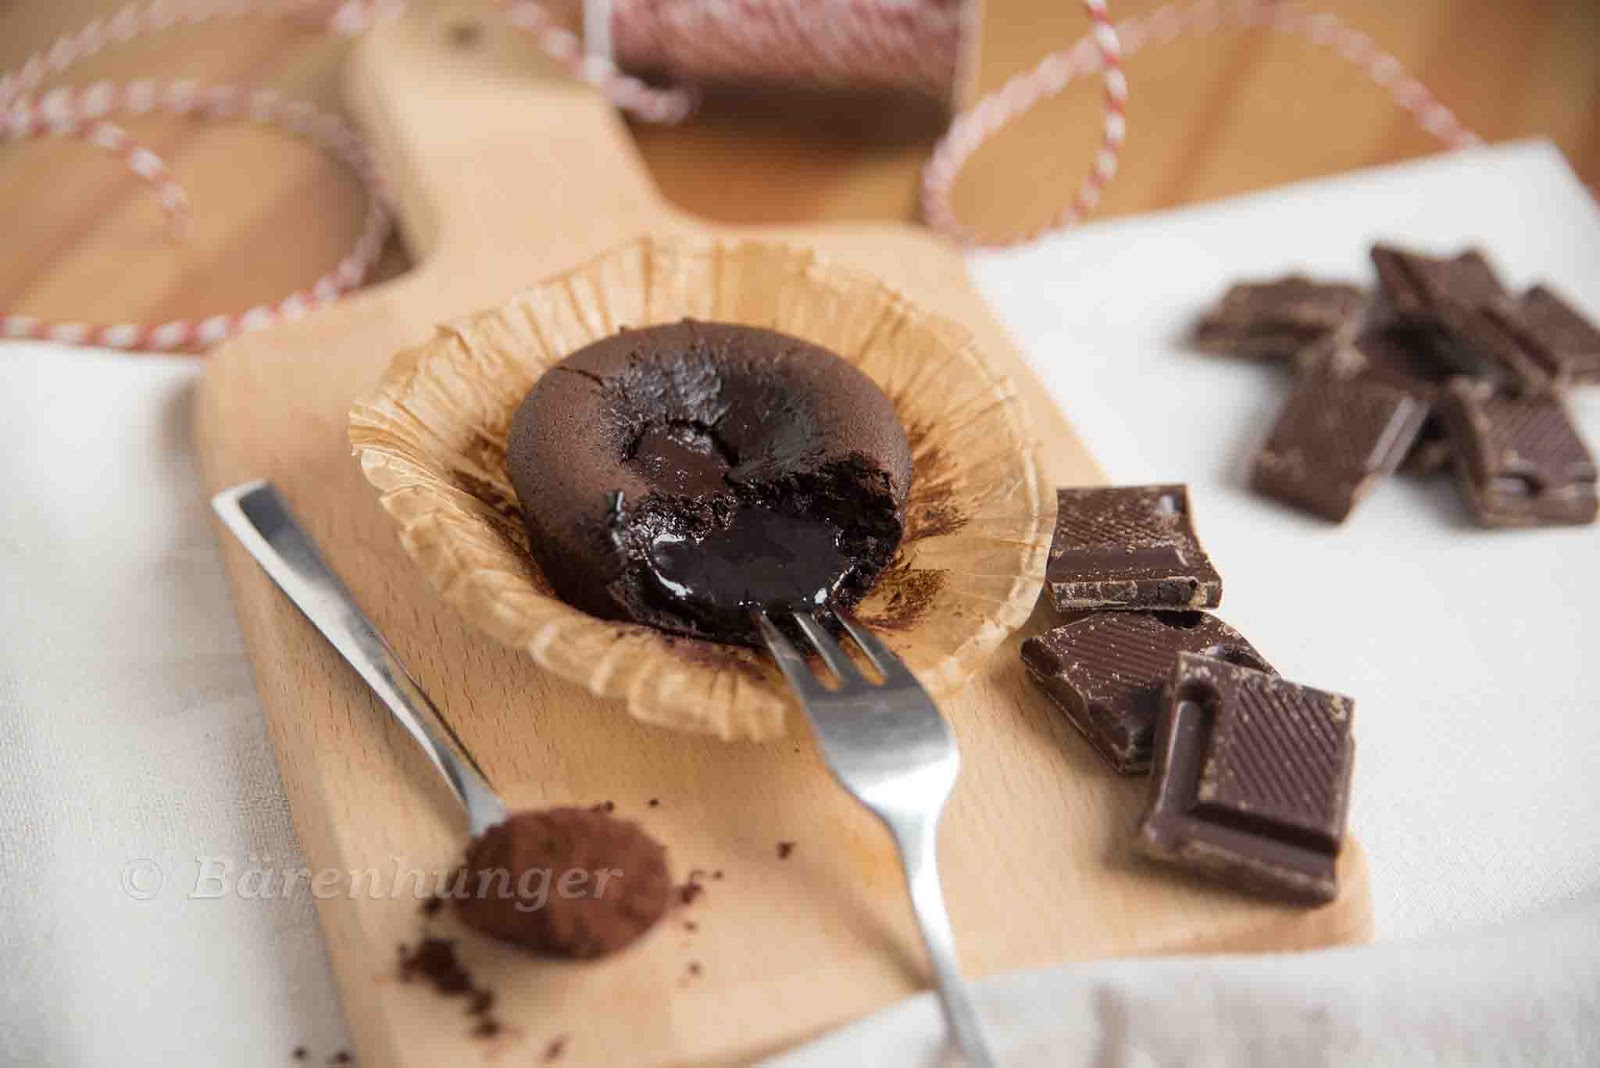 Lebkuchen Schokoladen Törtchen mit flüssigem Kern | Bärenhunger ...